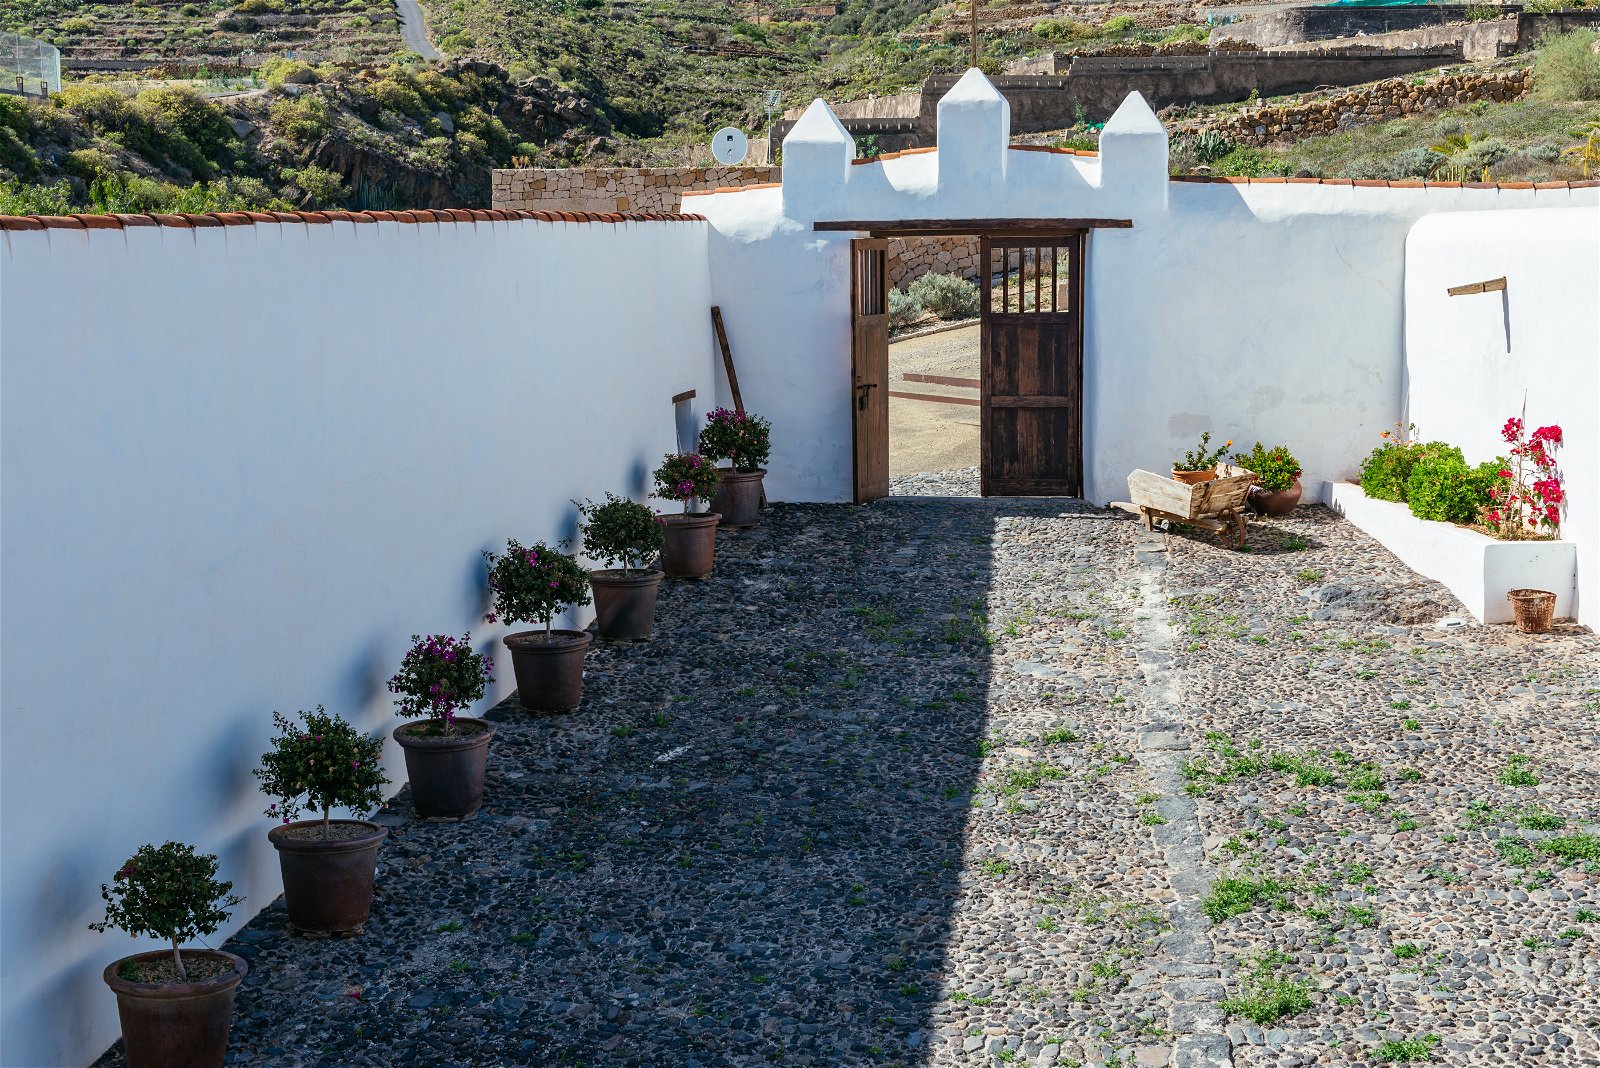 El paseo de entrada mirando desde dentro hacia fuera, se muestran los rasgos típicos canarios como el techo, la cantería, las paredes y las puertas.